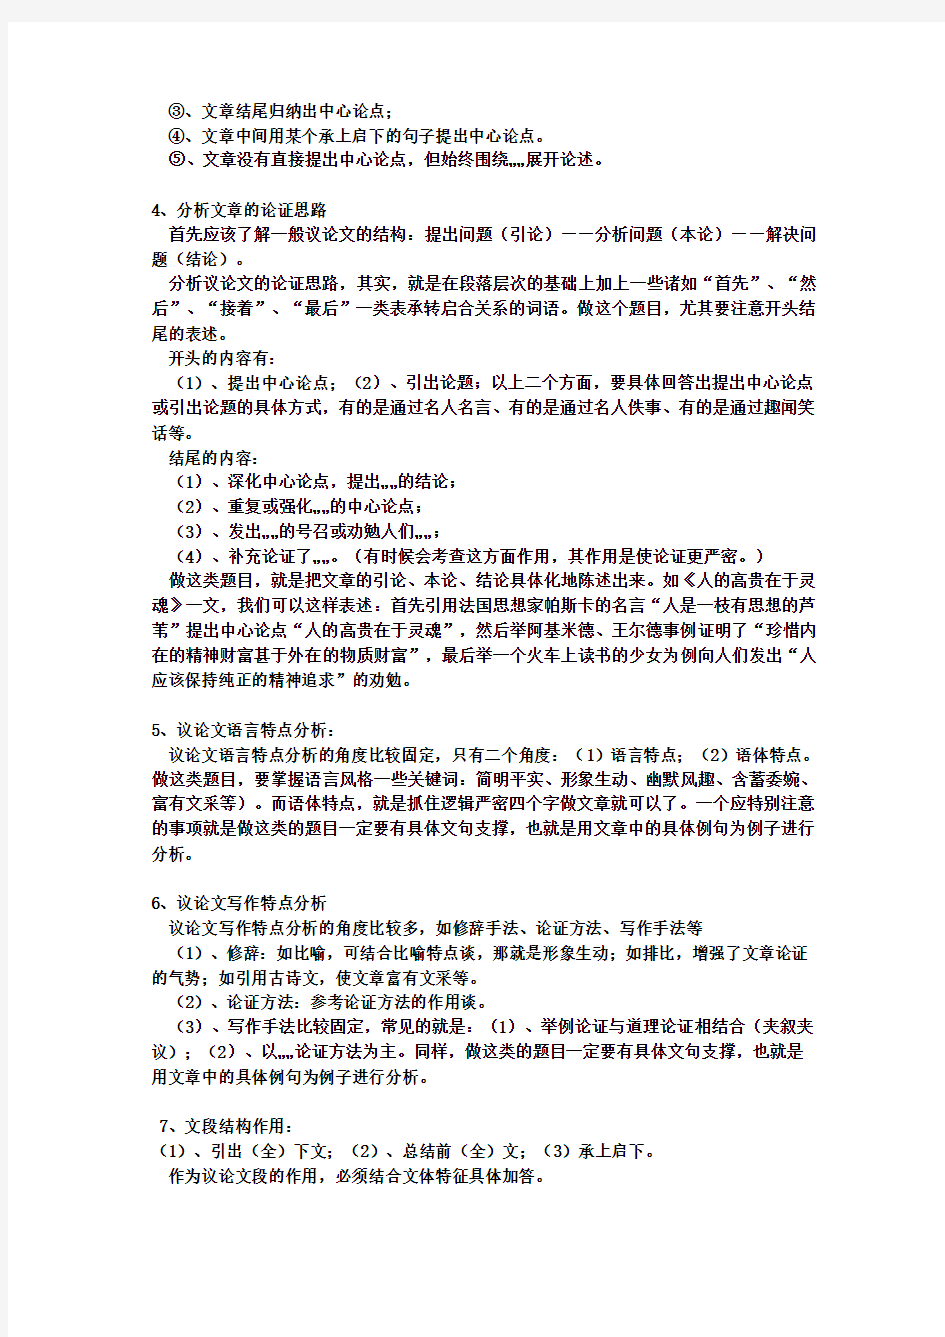 初中语文议论文阅读答题技巧与练习_完整版